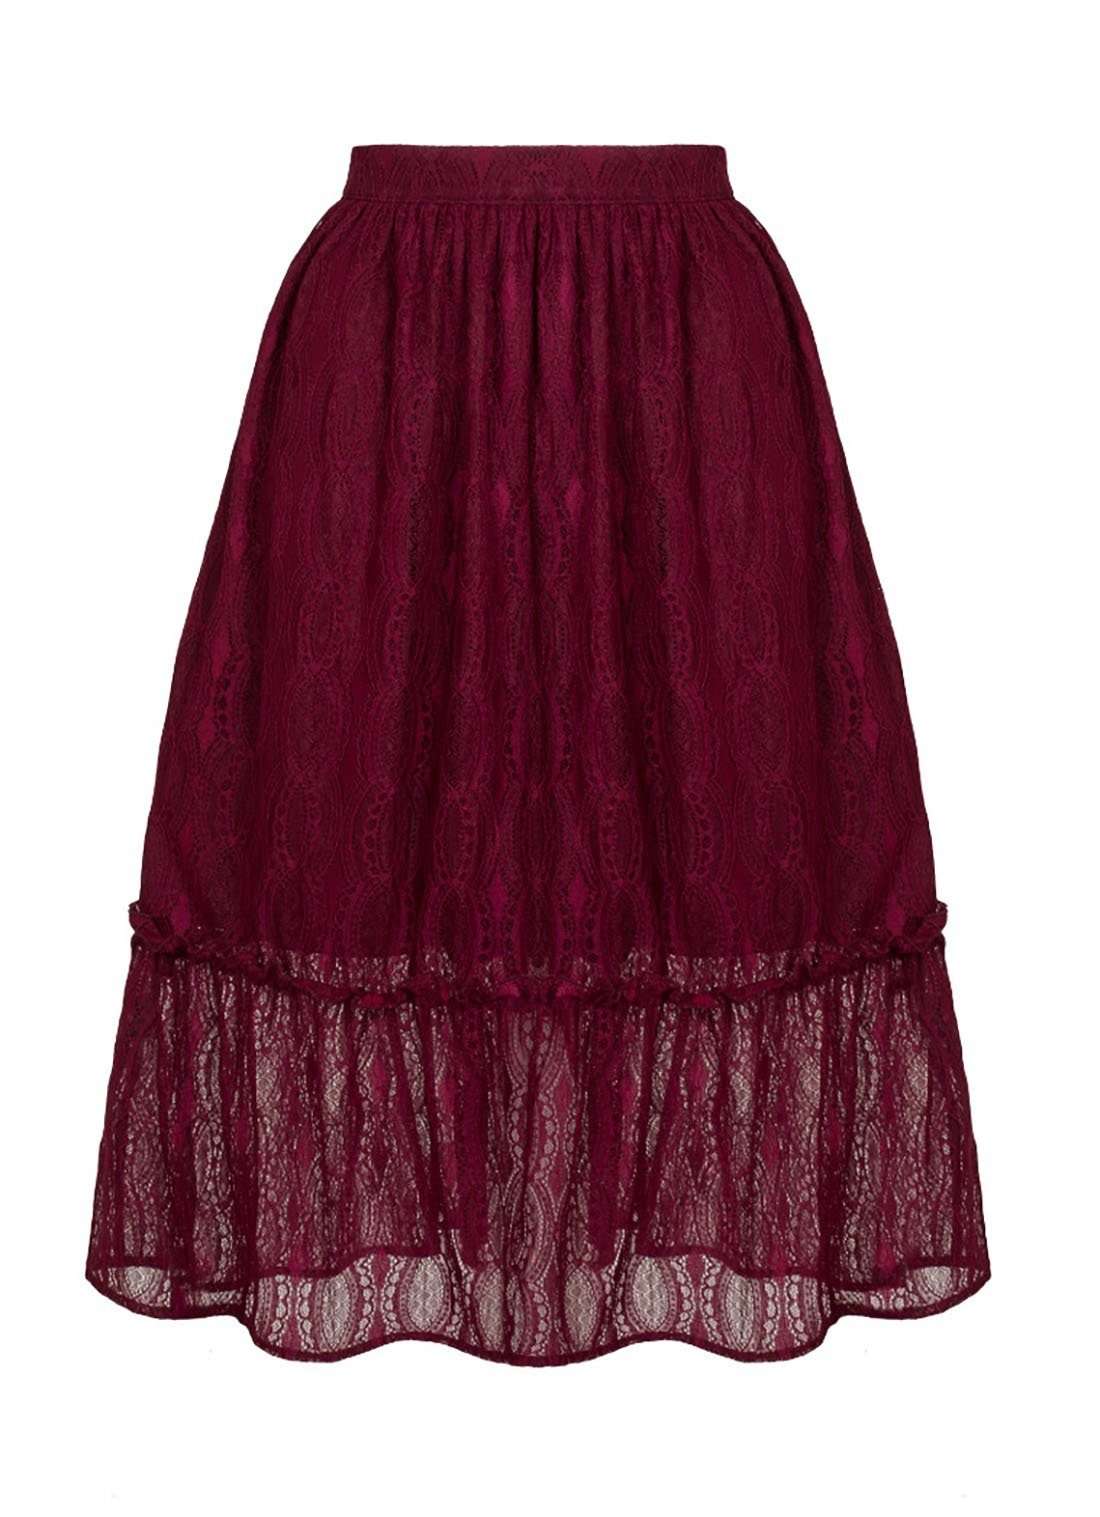 Юбка с рюшами Rhea, юбка с воланами и рюшами, бордовая винтажная юбка в стиле ретро, кружевная юбка